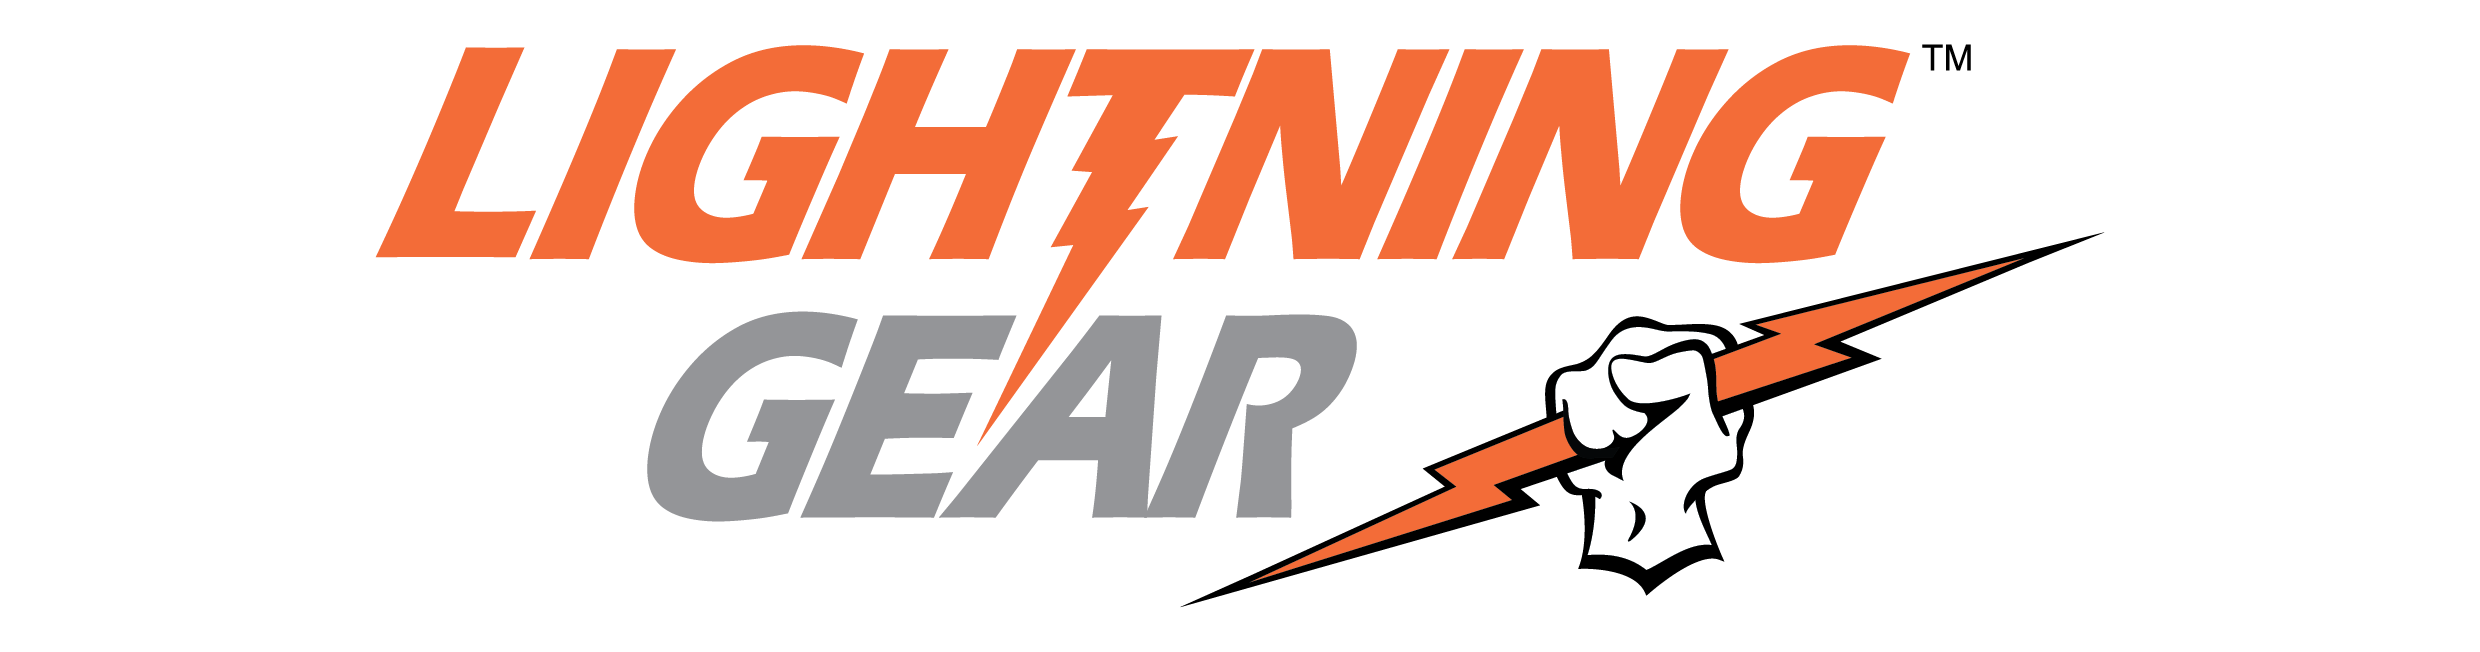 Lightning Gear